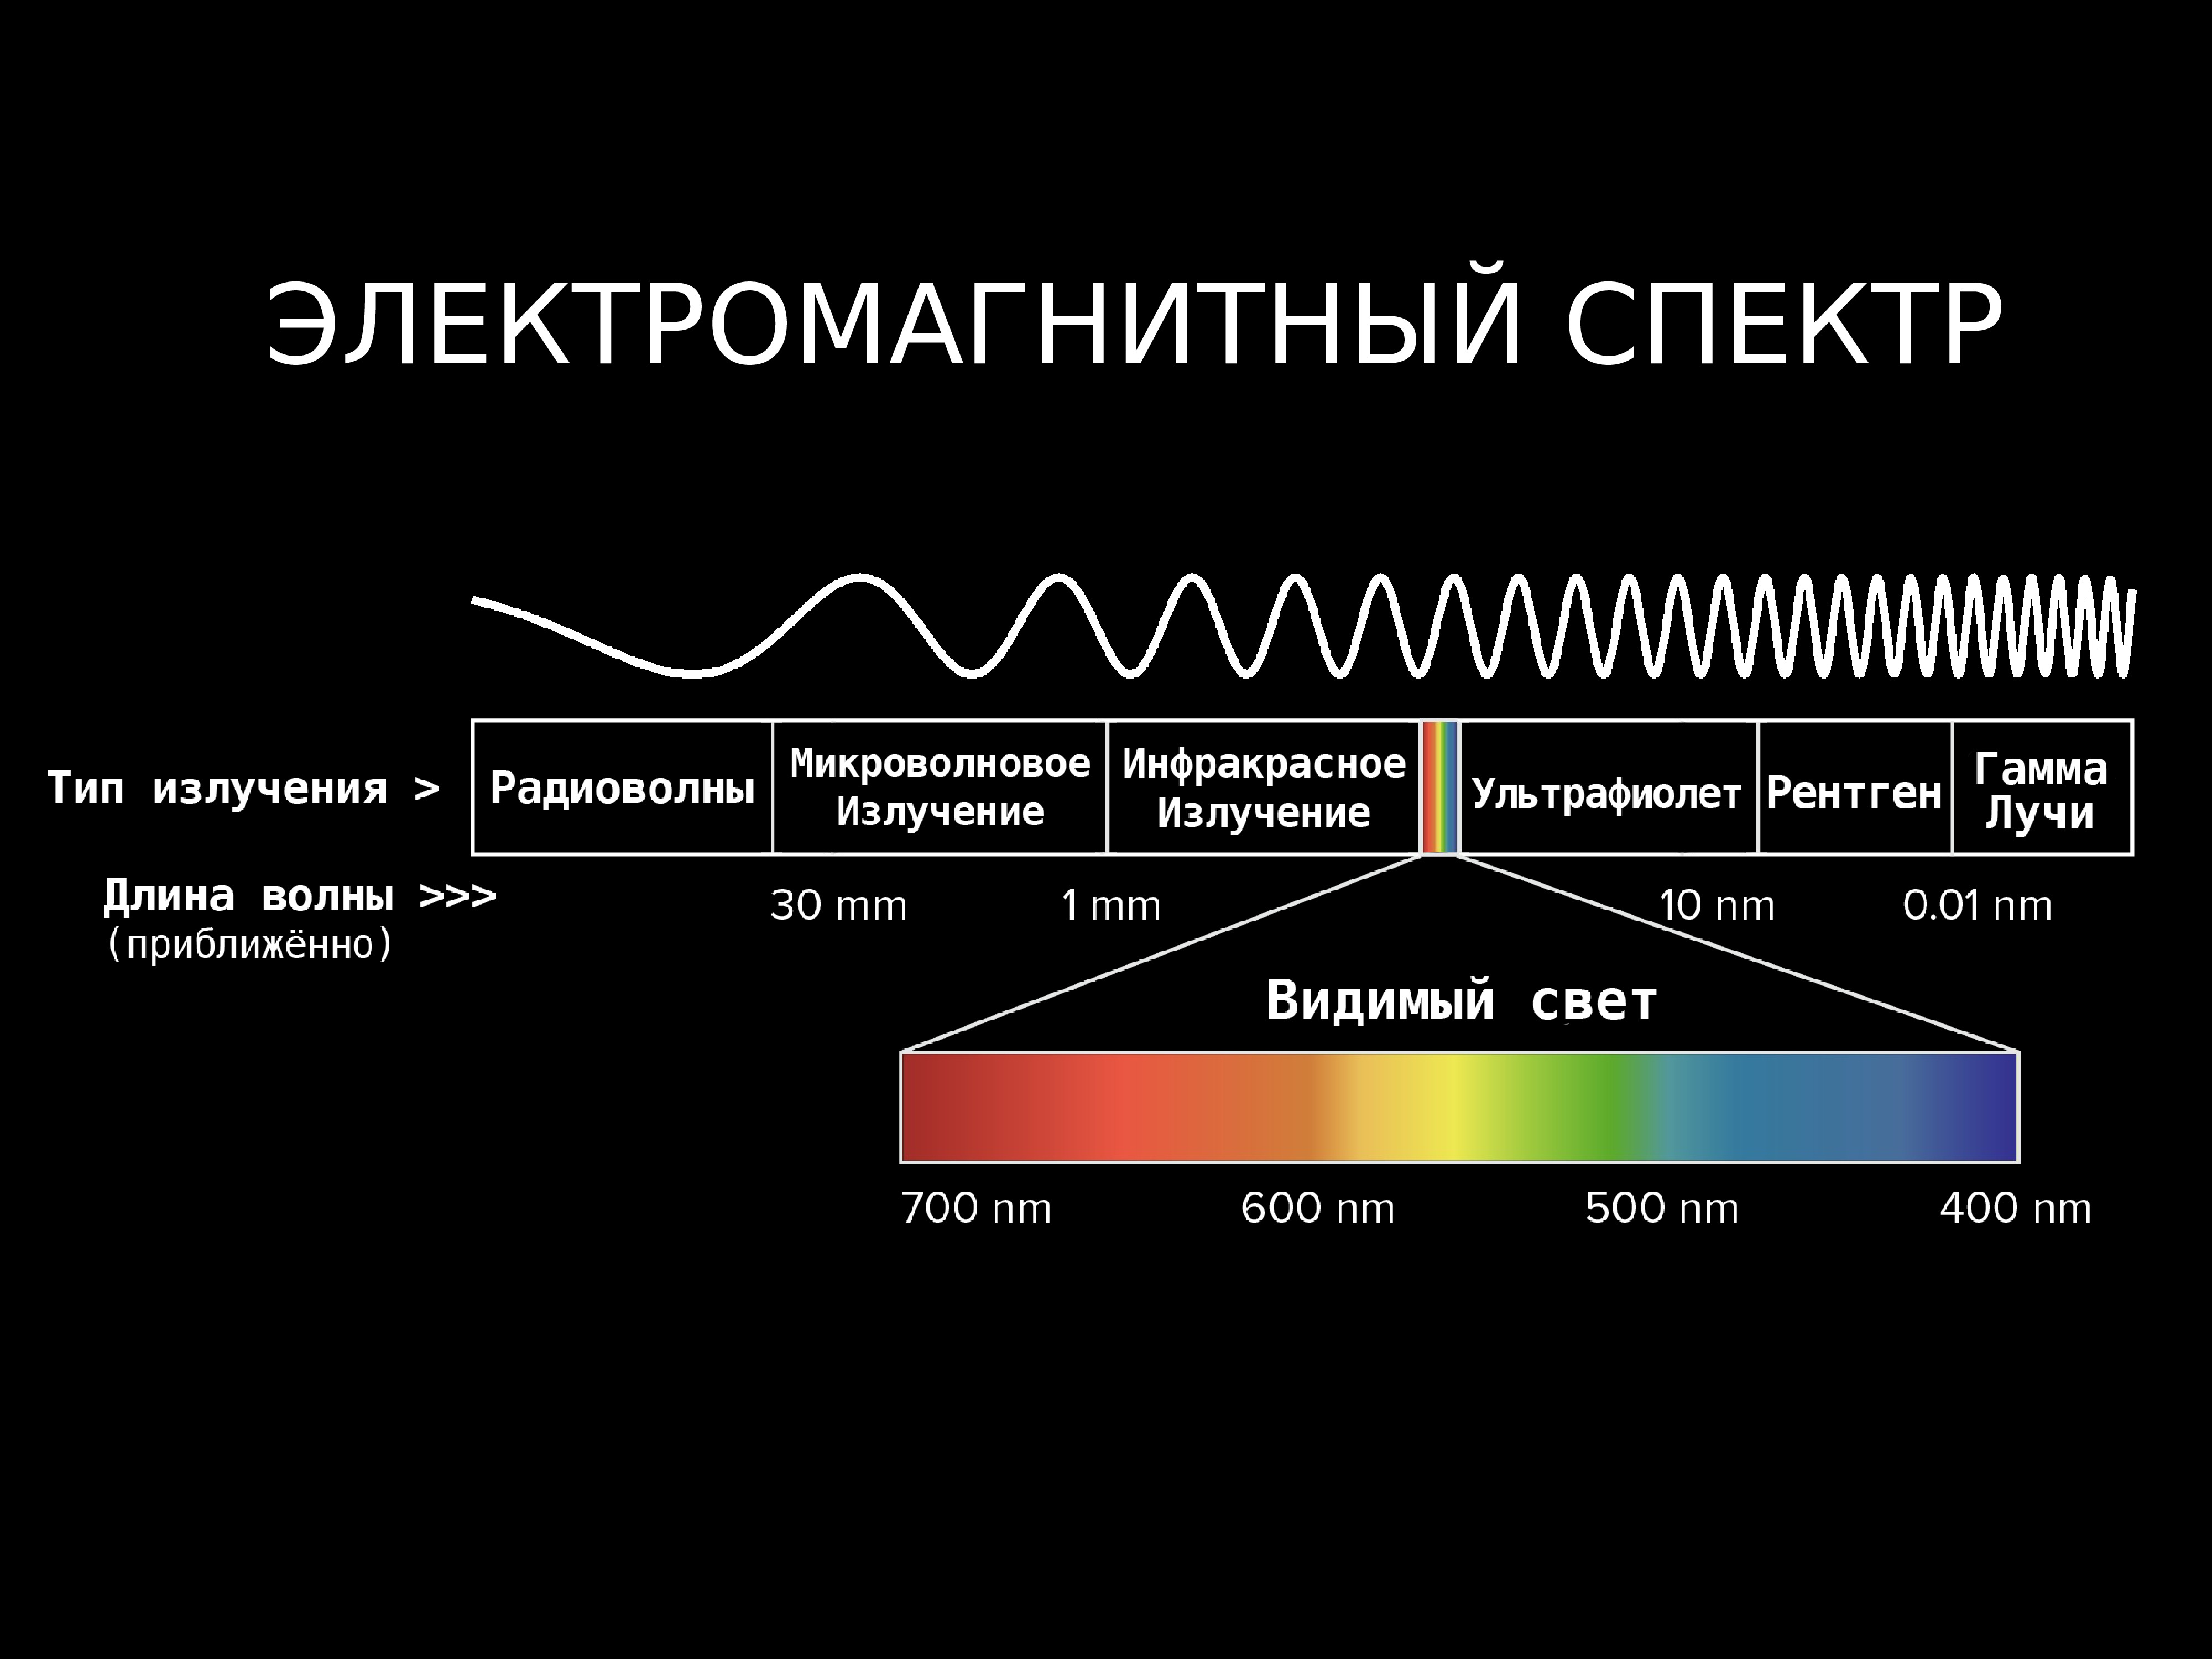 Частота звука 10 кгц. Диапазоны спектра электромагнитного излучения. Электромагнитное излучение спектр электромагнитного излучения. Спектр длин волн электромагнитных излучений. Длина волны электромагнитного излучения.